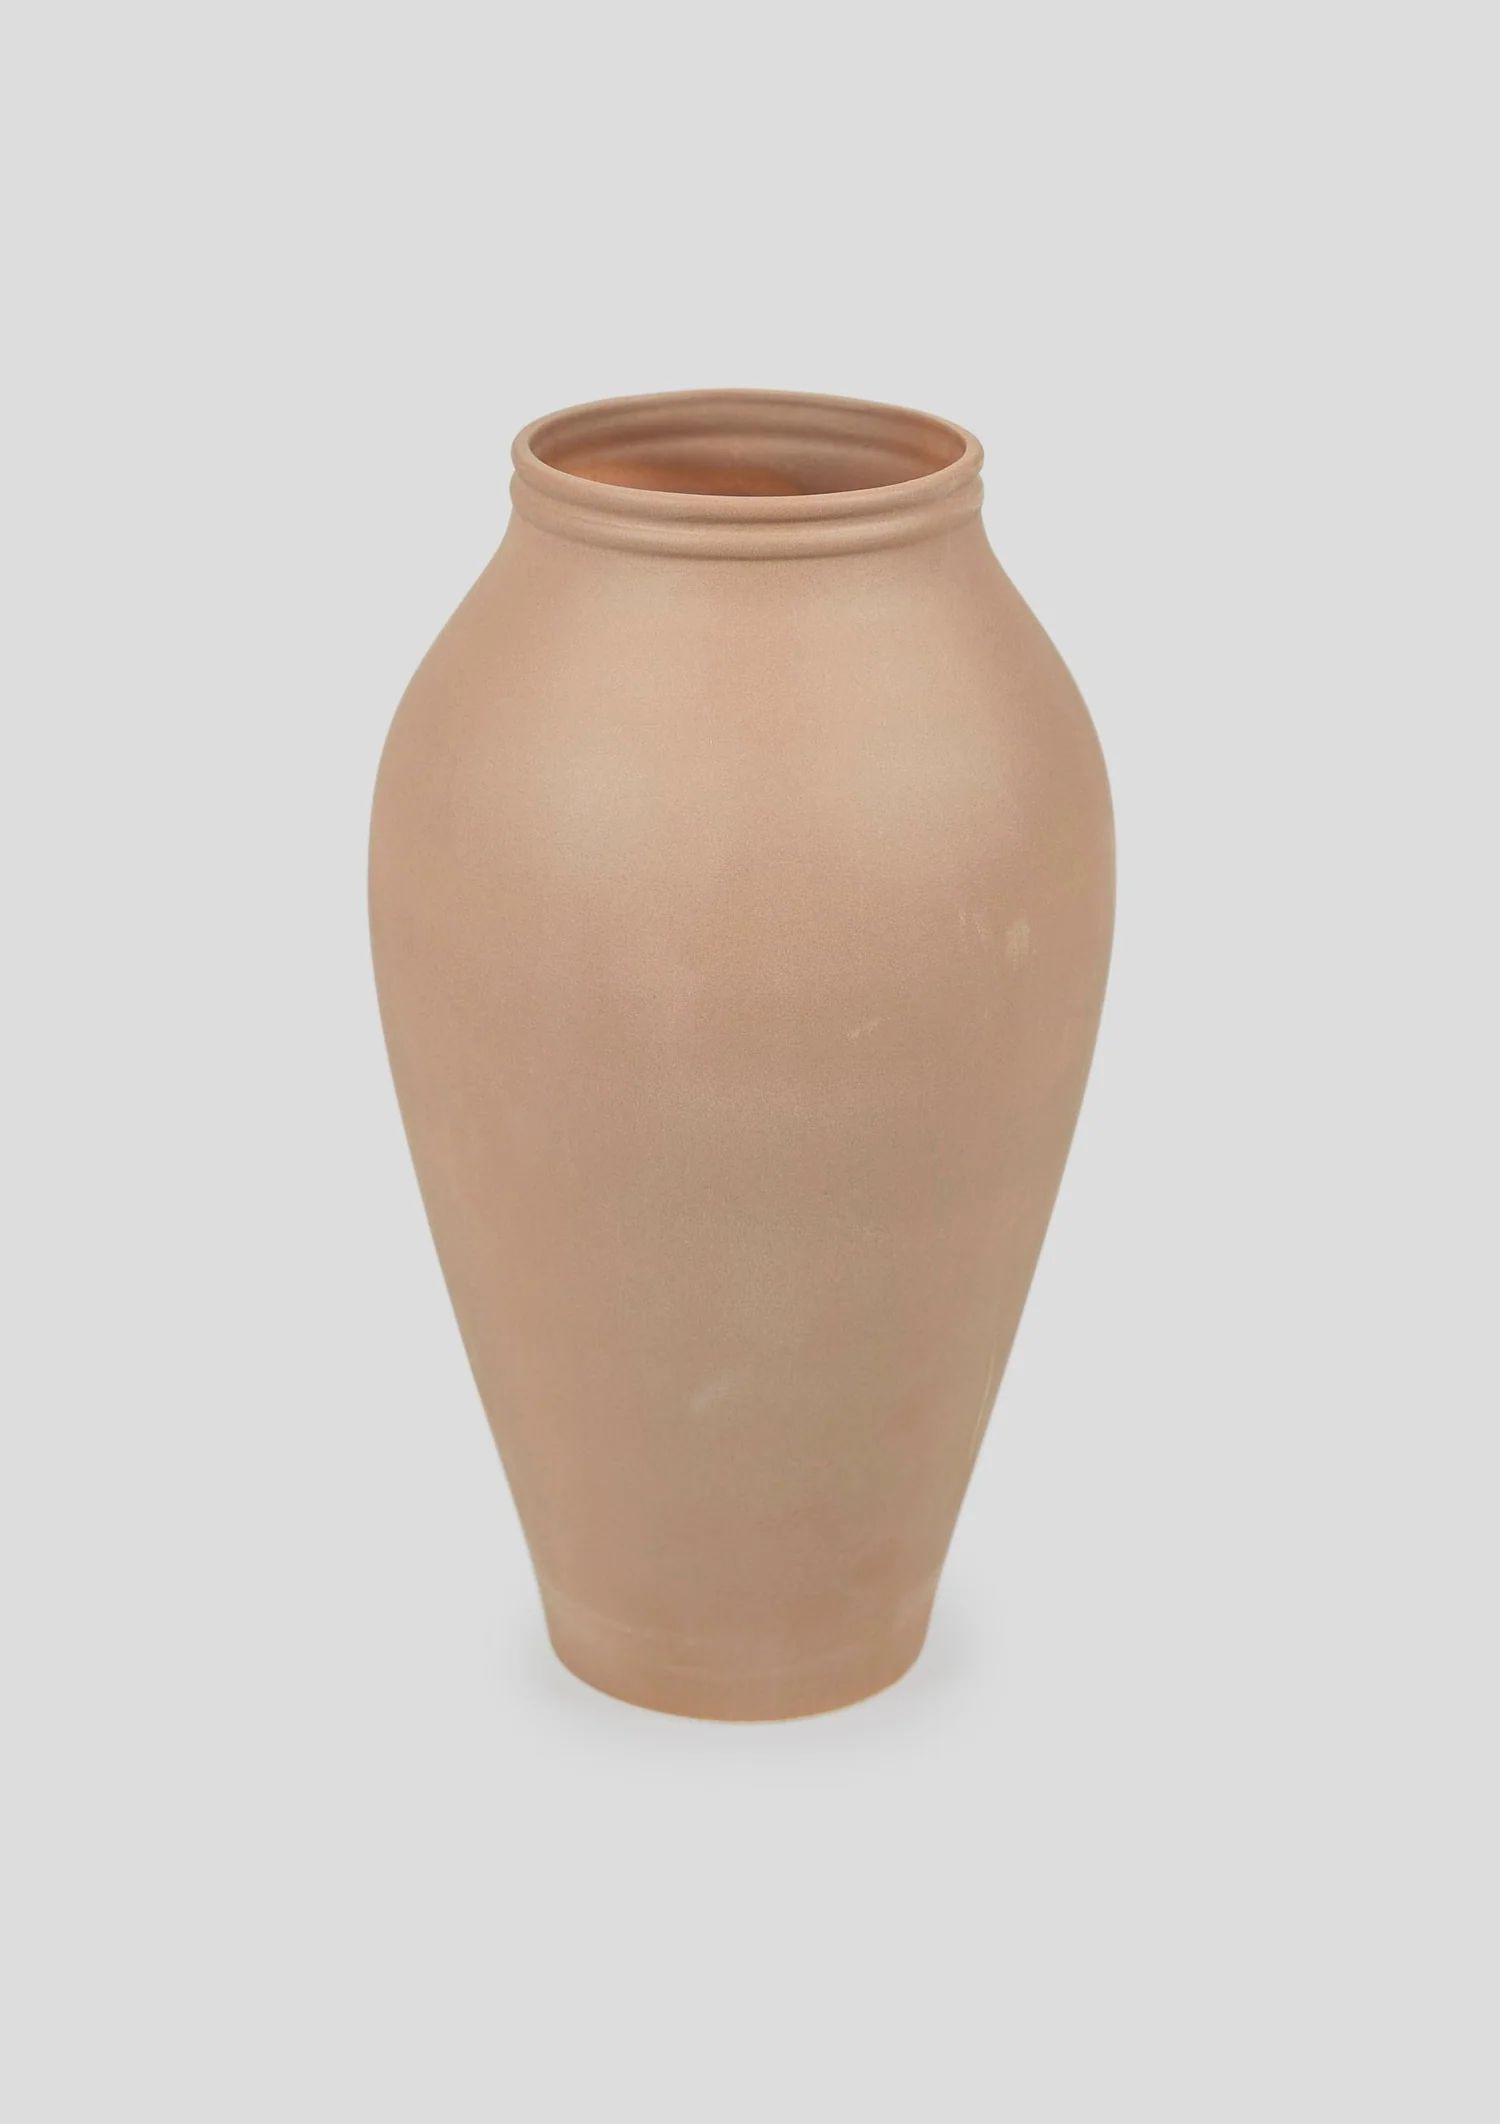 Terracotta Ceramic Vase | Best Tall Vases at Afloral.com | Afloral